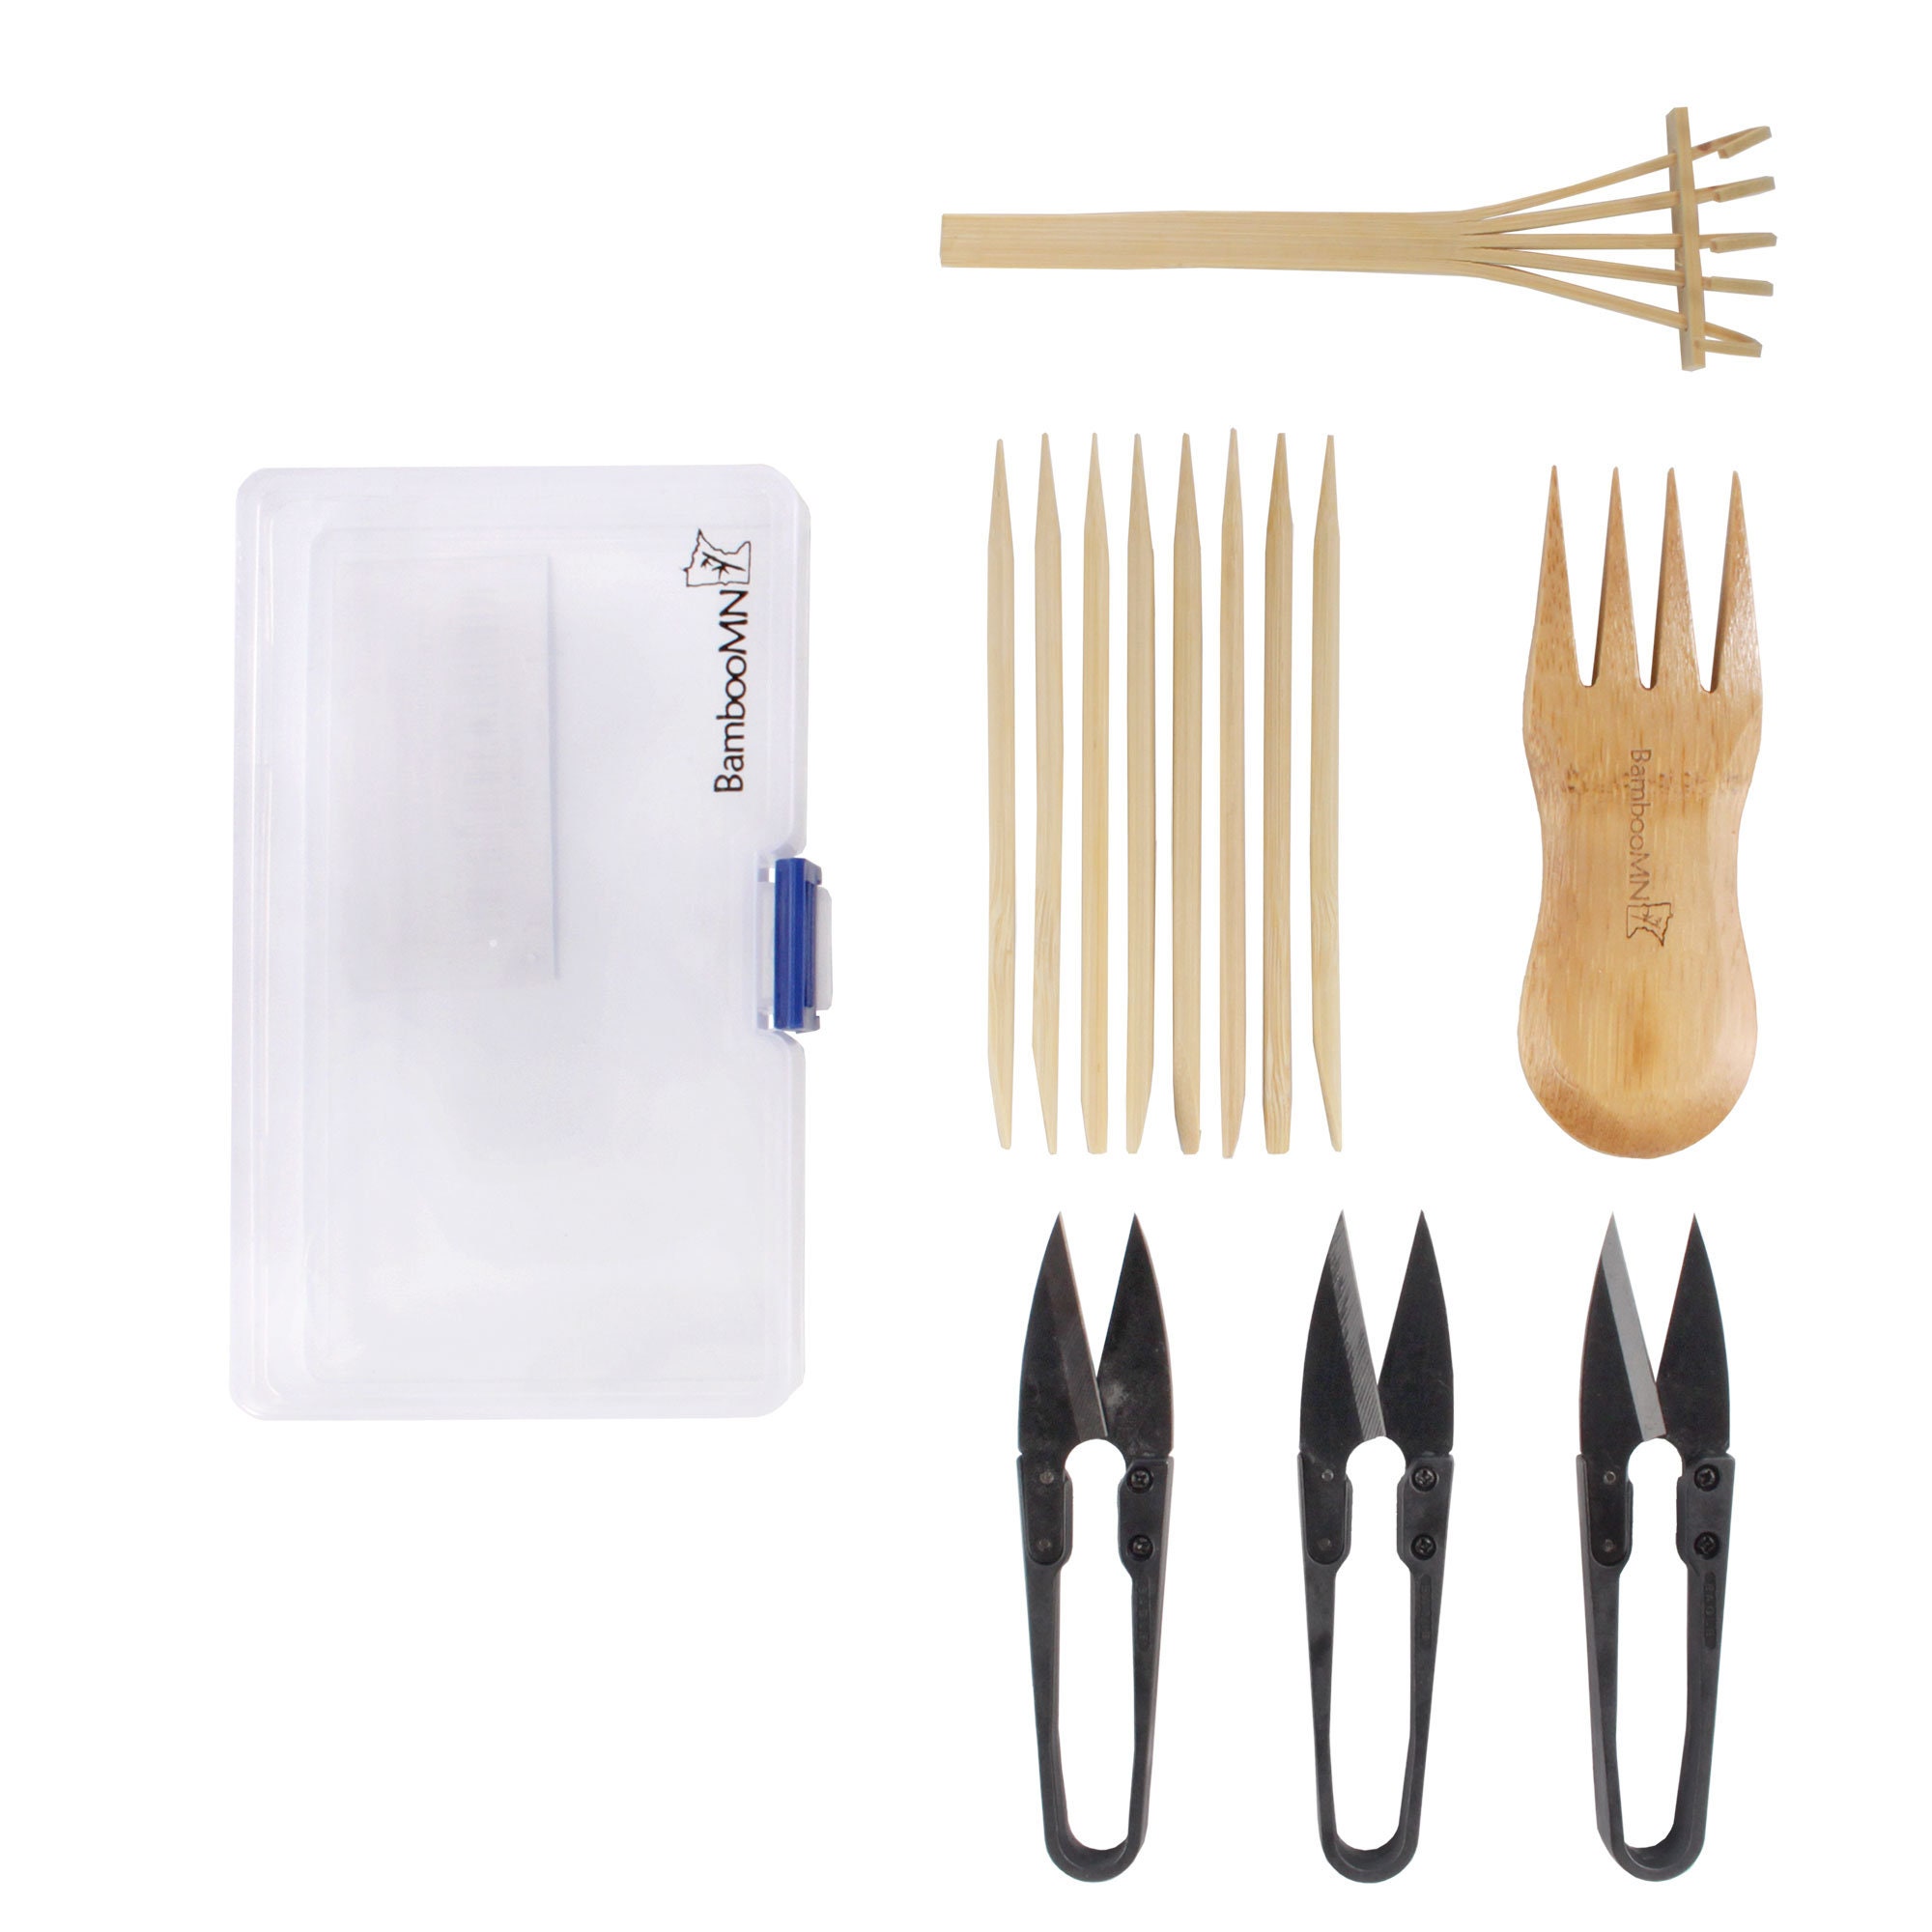 Sanlykate Kit de herramientas para bonsái de 8 piezas, juego básico de  recortadora que incluye podadora, tijeras plegables, pinzas, picas,  rastrillo